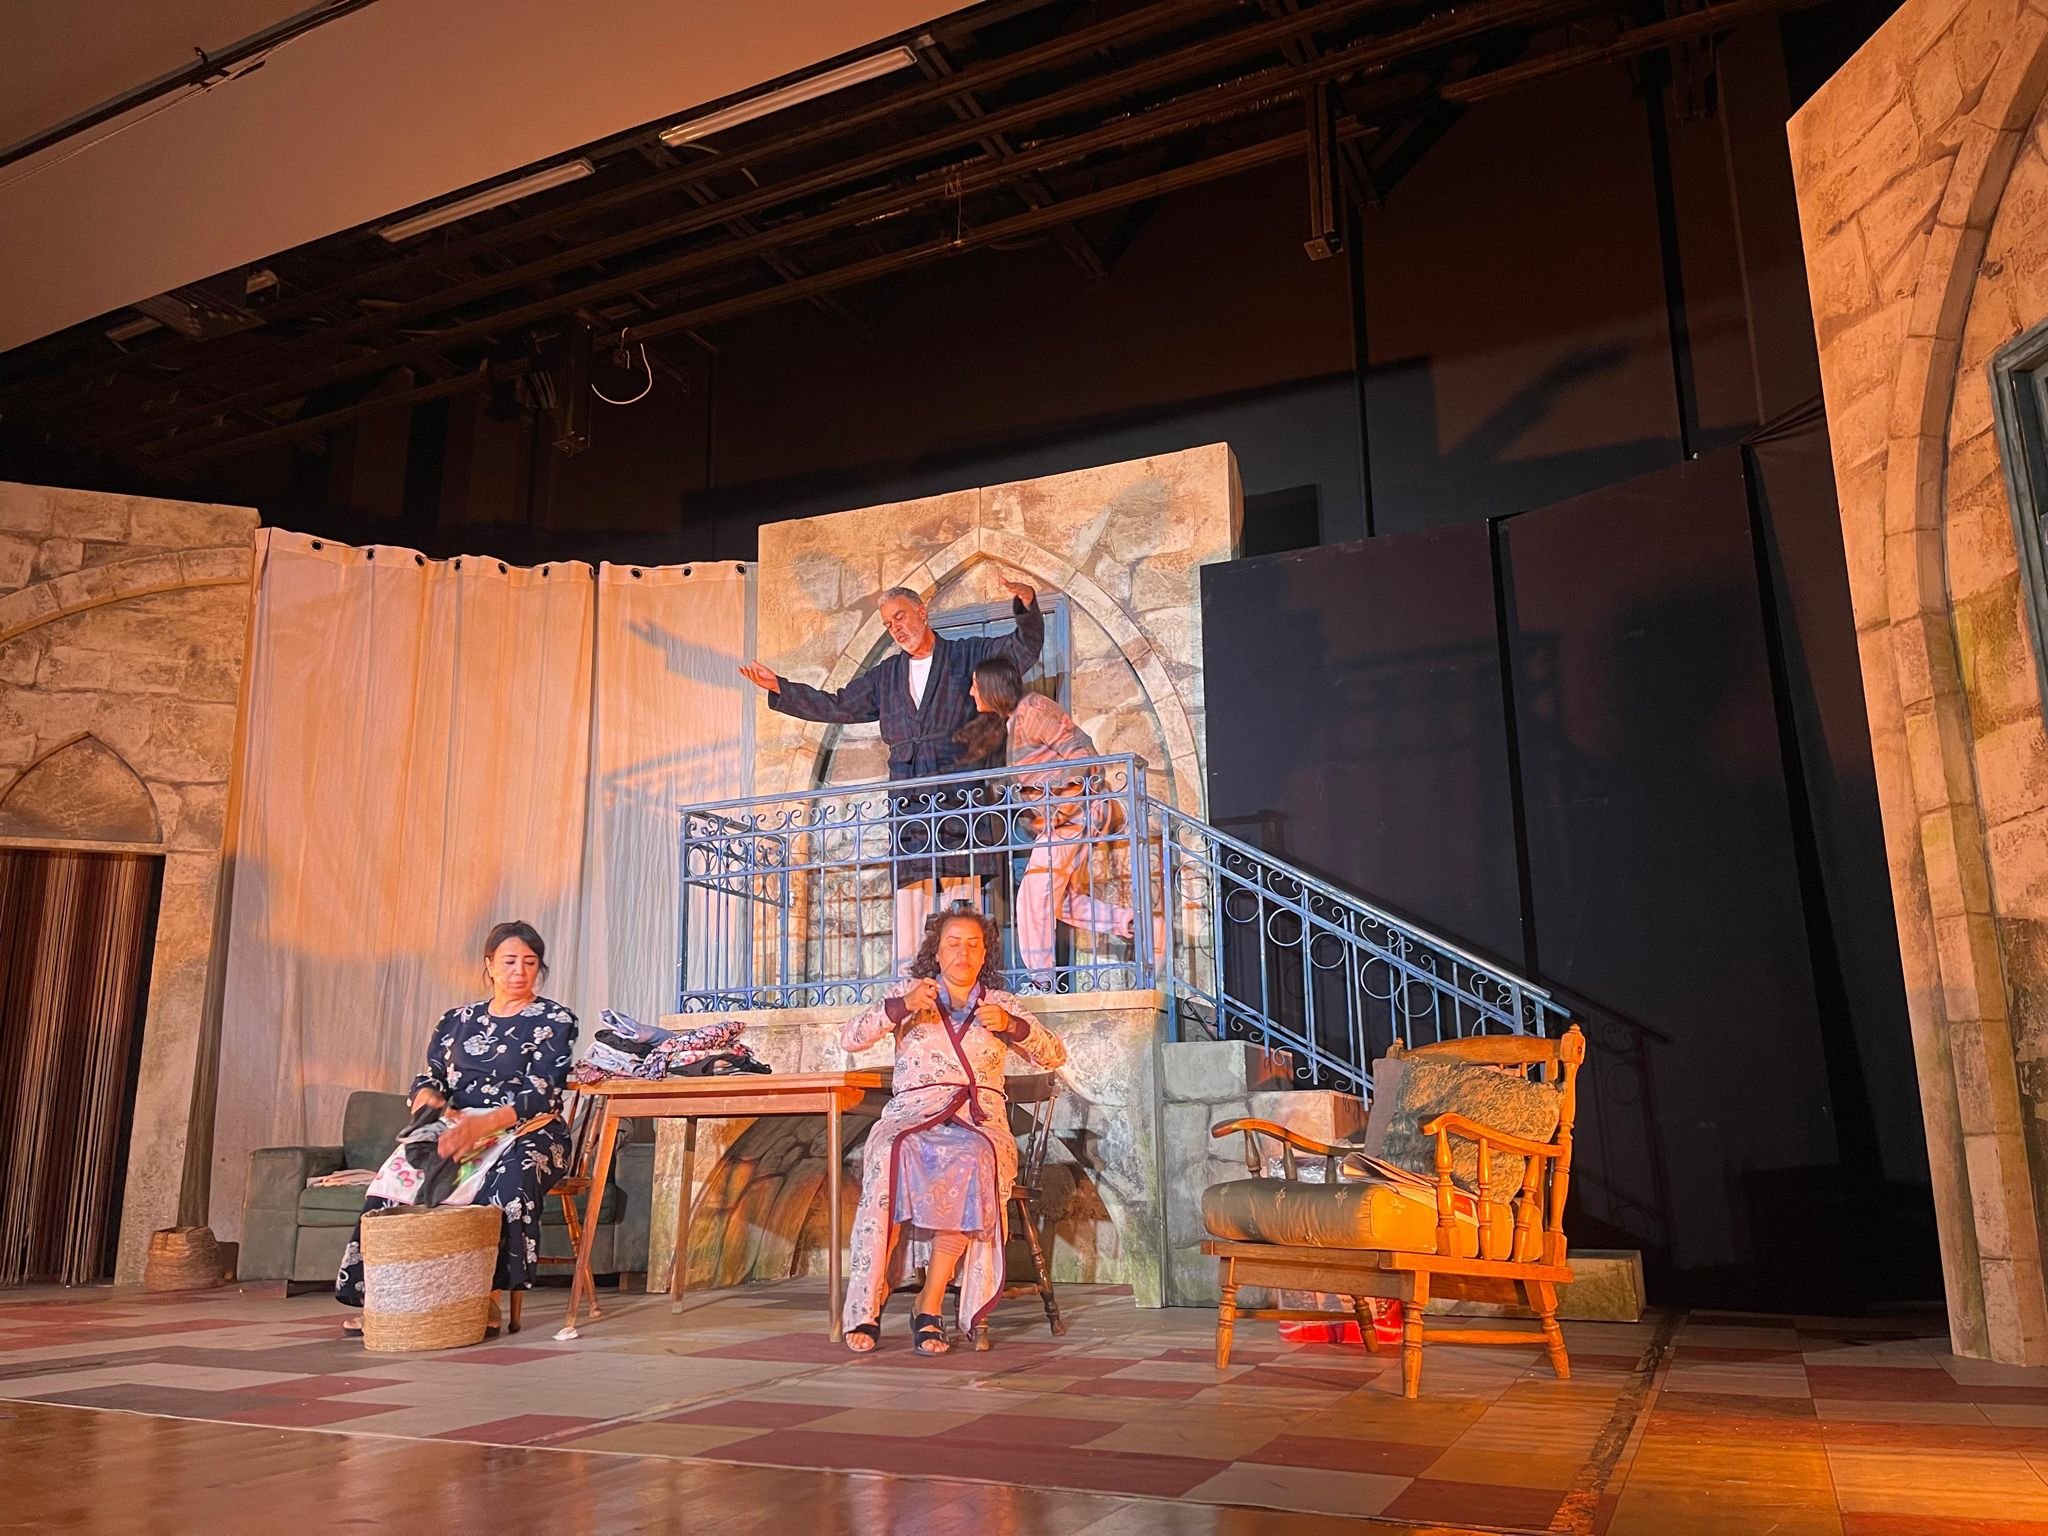 المركز الجماهيري الطيرة يعرض مسرحية "كاڤيار وعدس" على خشبة مسرح اشكول  هبايس-3